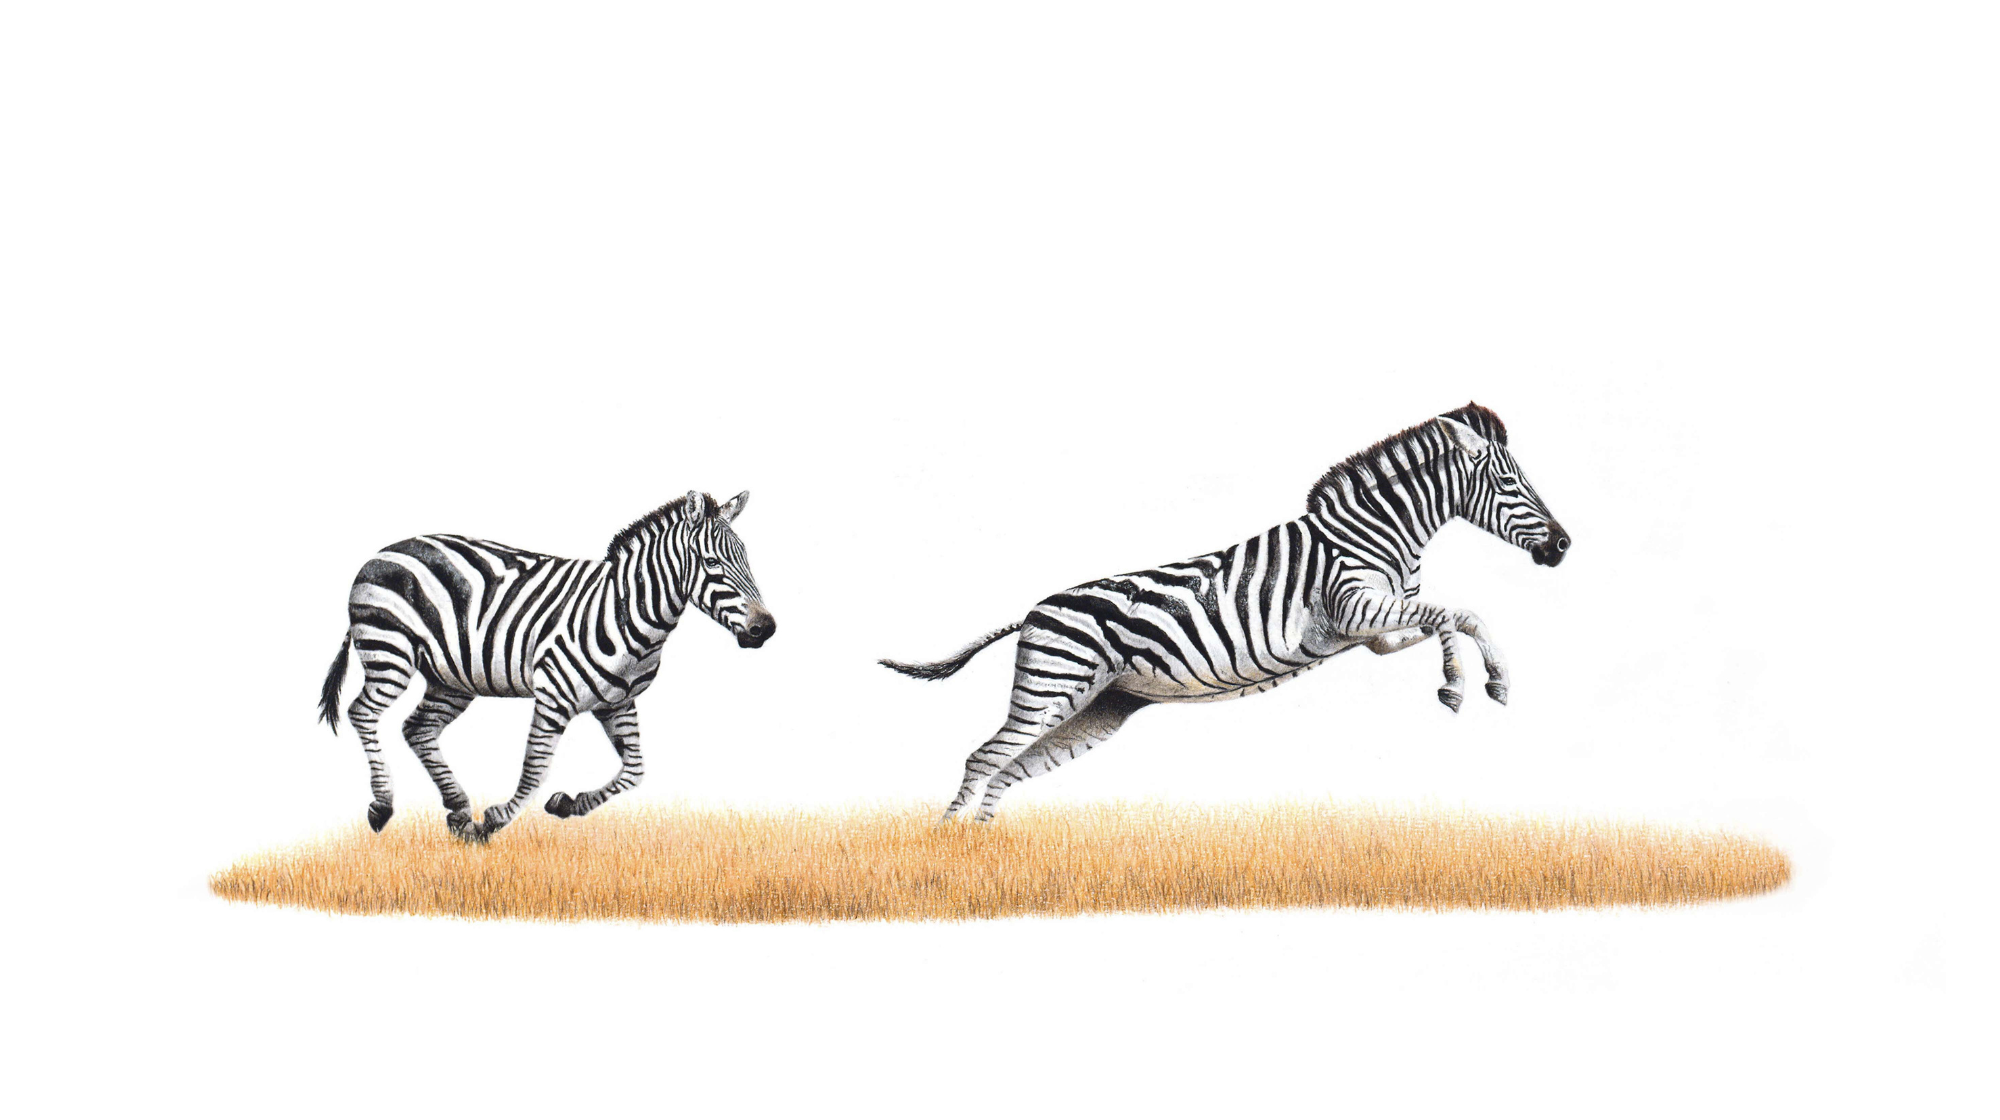 Zebra pair by Matthew Bell